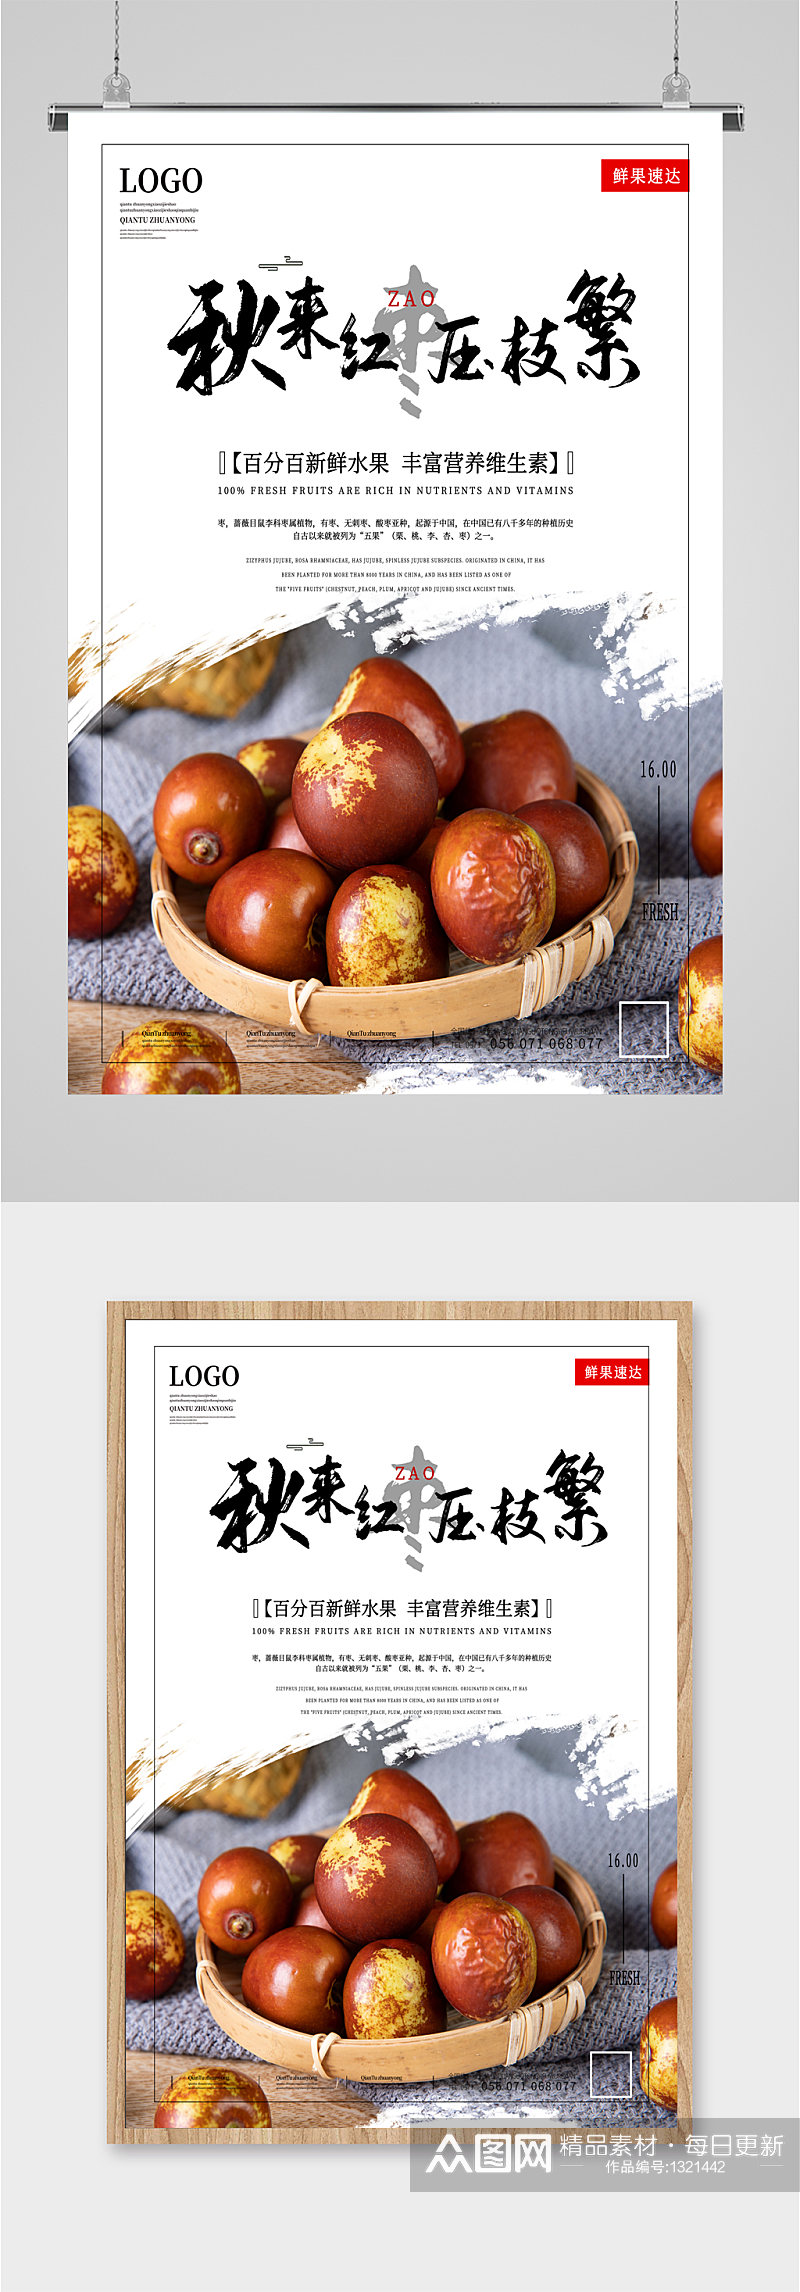 秋季红枣养生食品海报素材